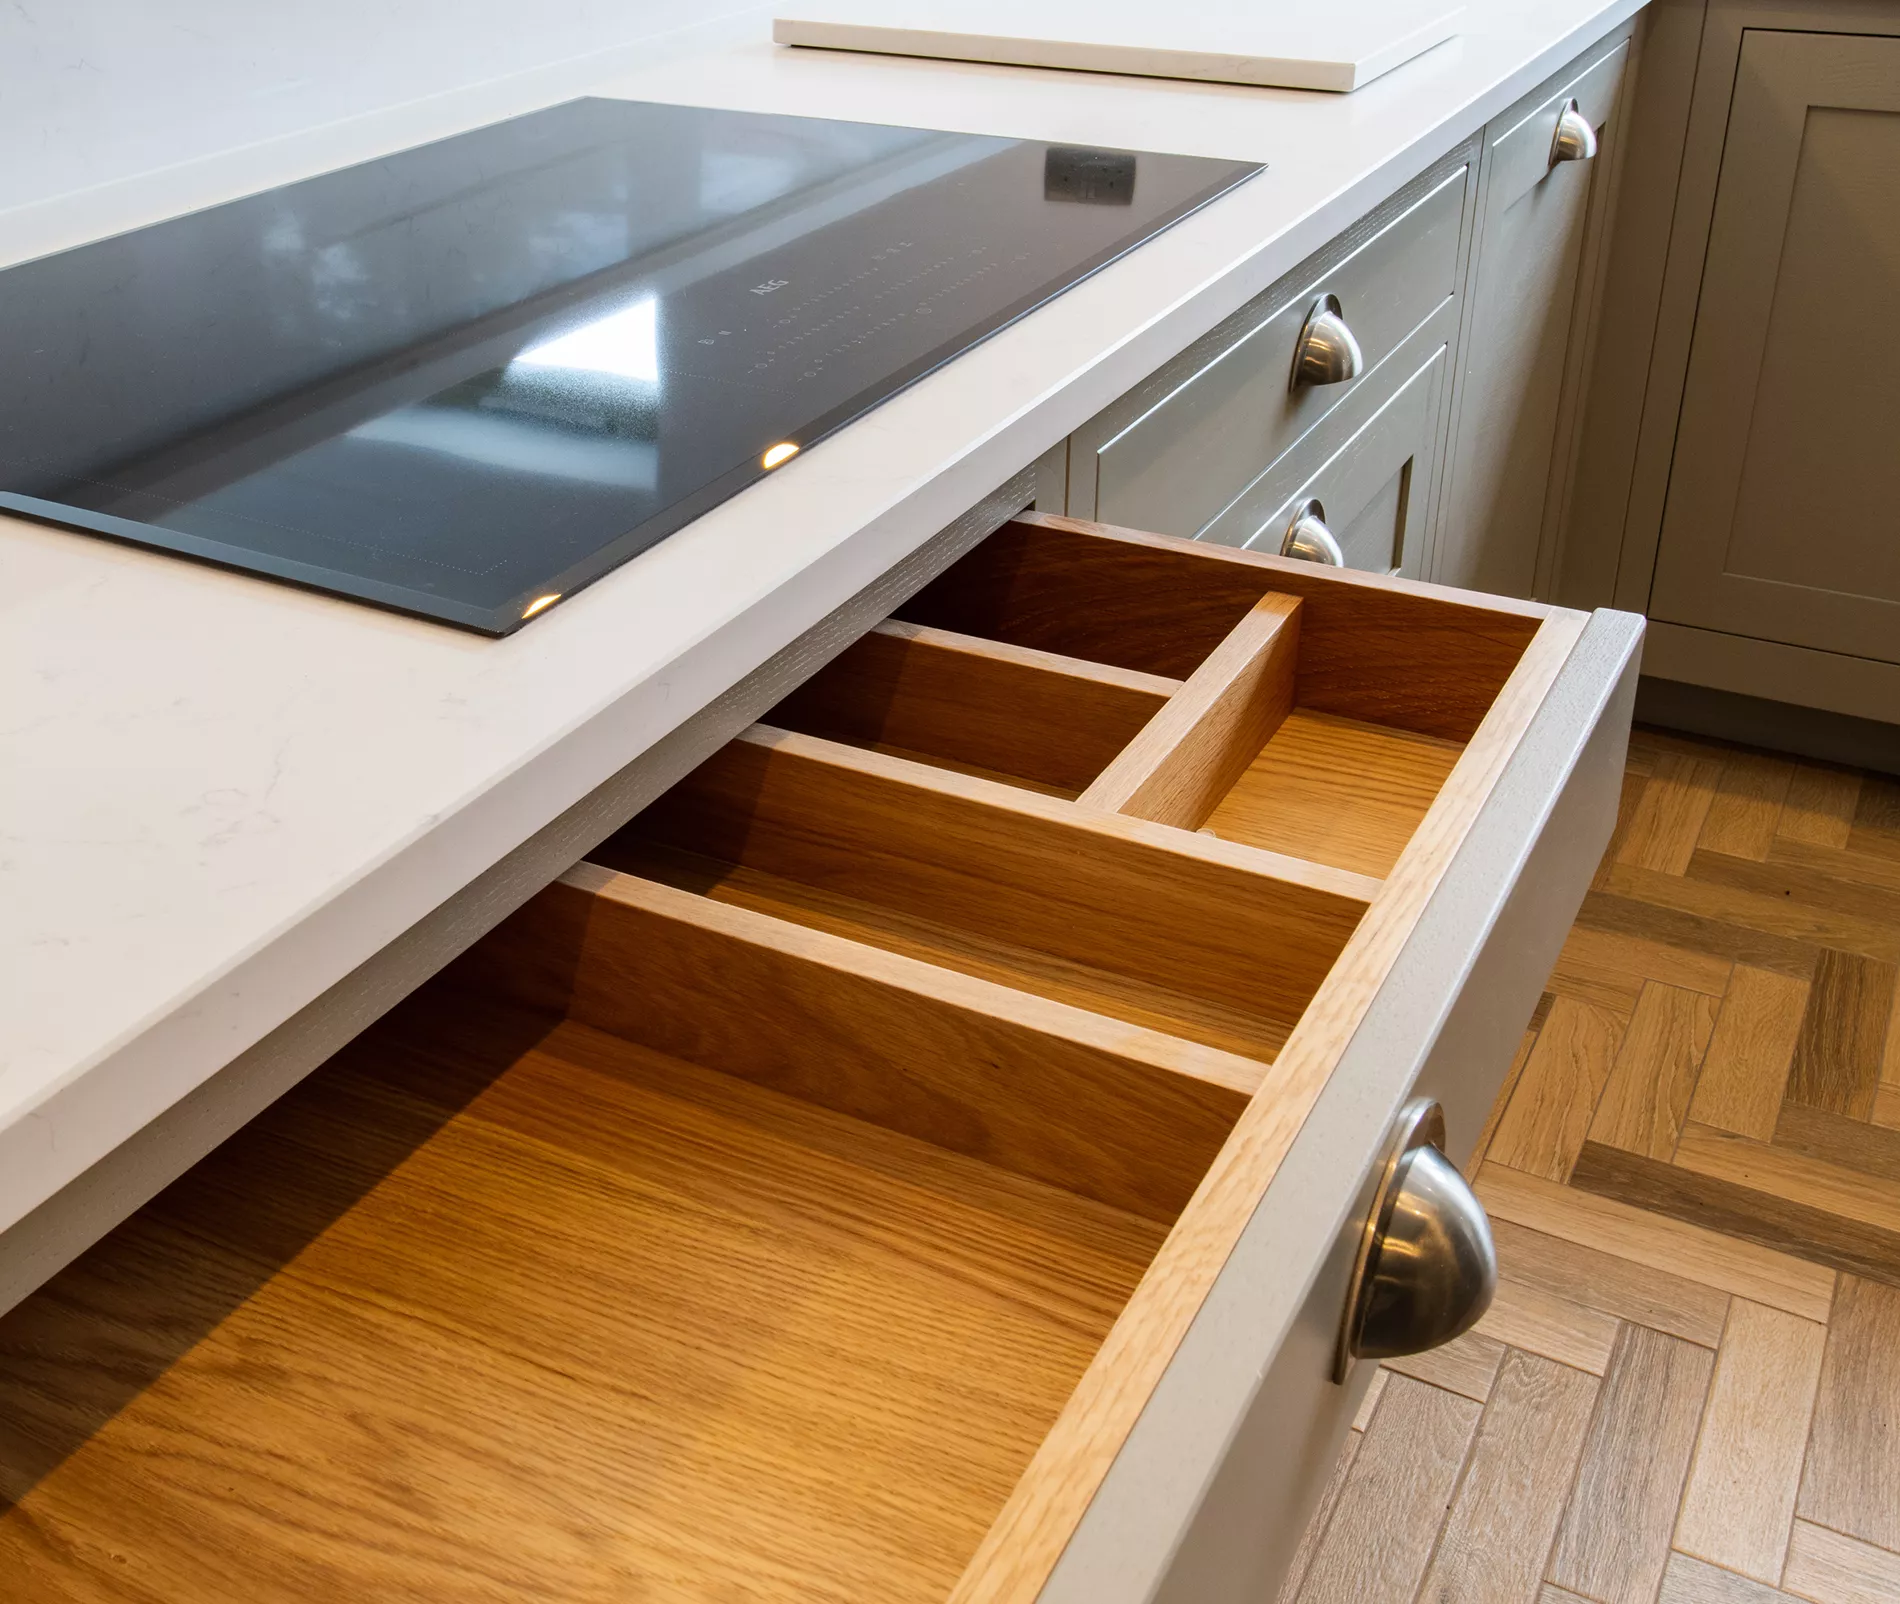 bespoke kitchen drawers